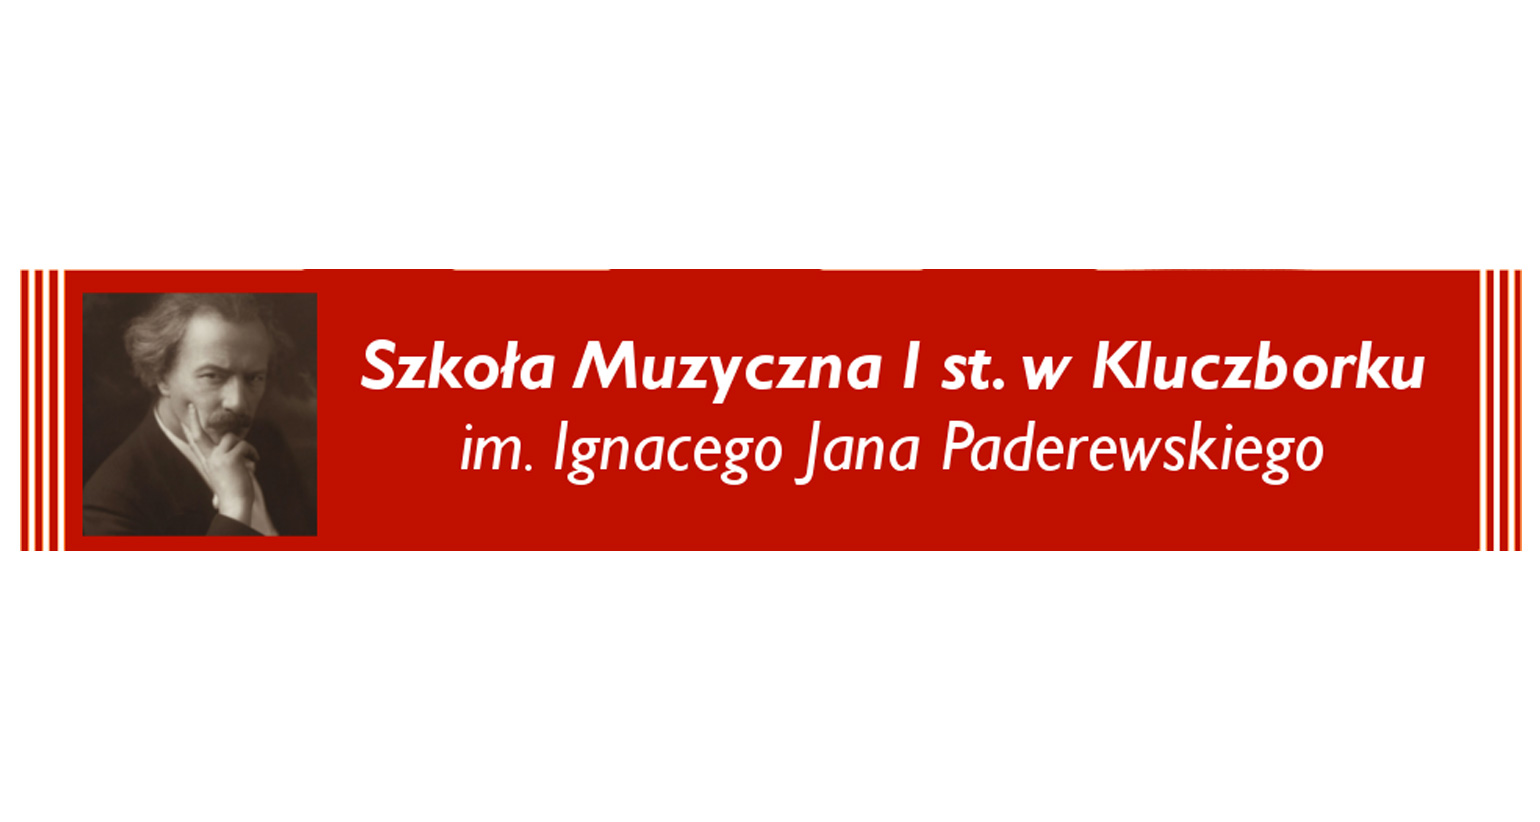 Szkoła Muzyczna I st. Im. Ignacego J. Paderewskiego w Kluczborku